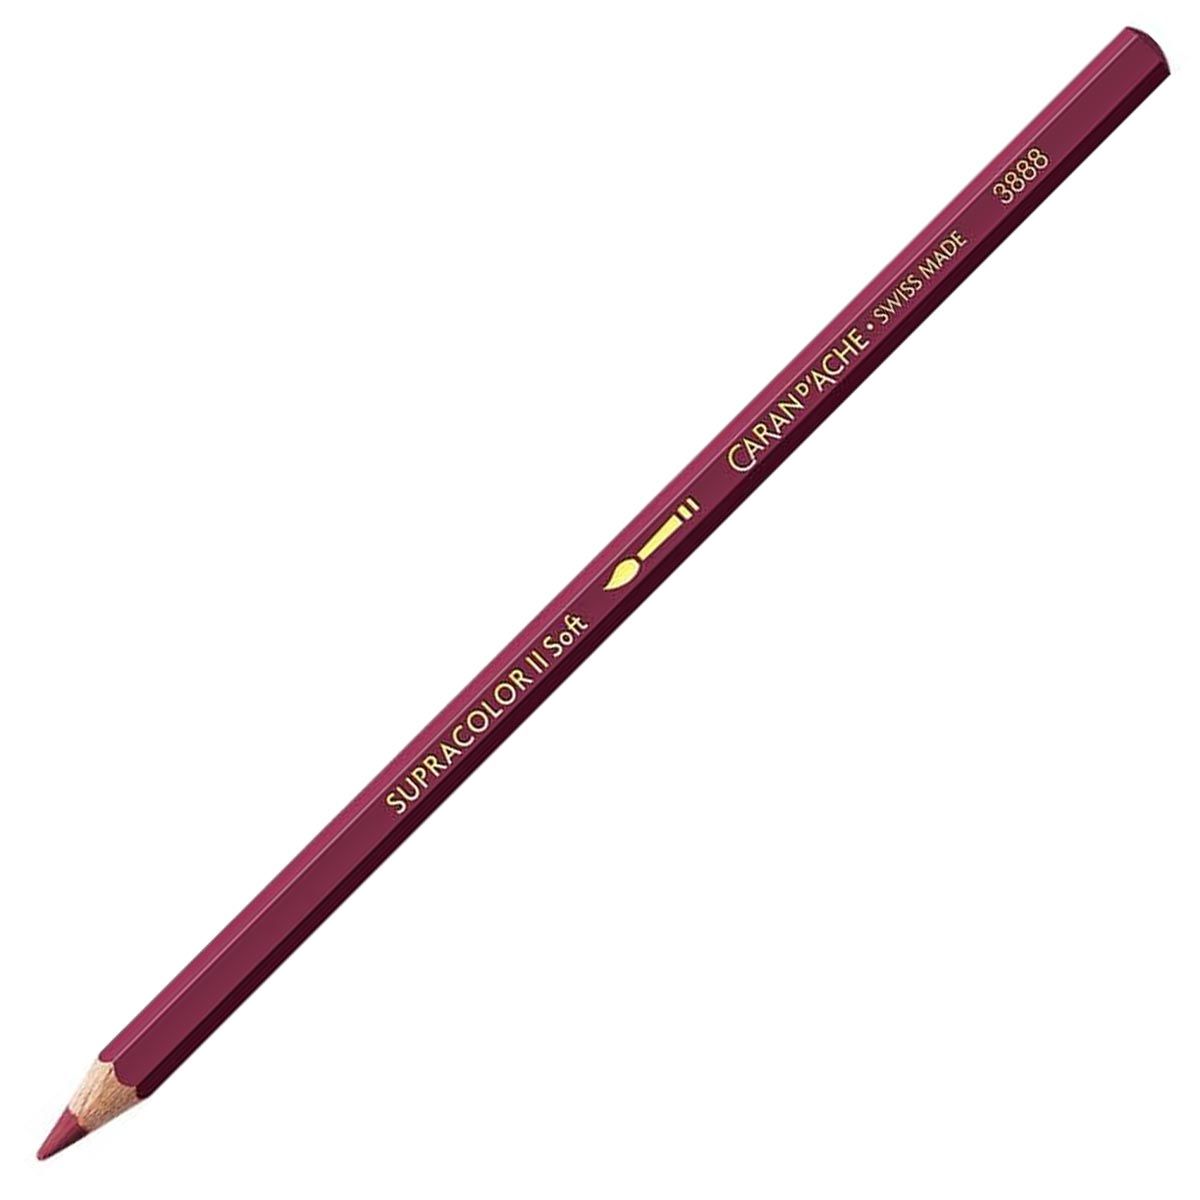 Caran d'Ache Supracolor ll Soft Aquarelle Pencil - Dark Carmine 089